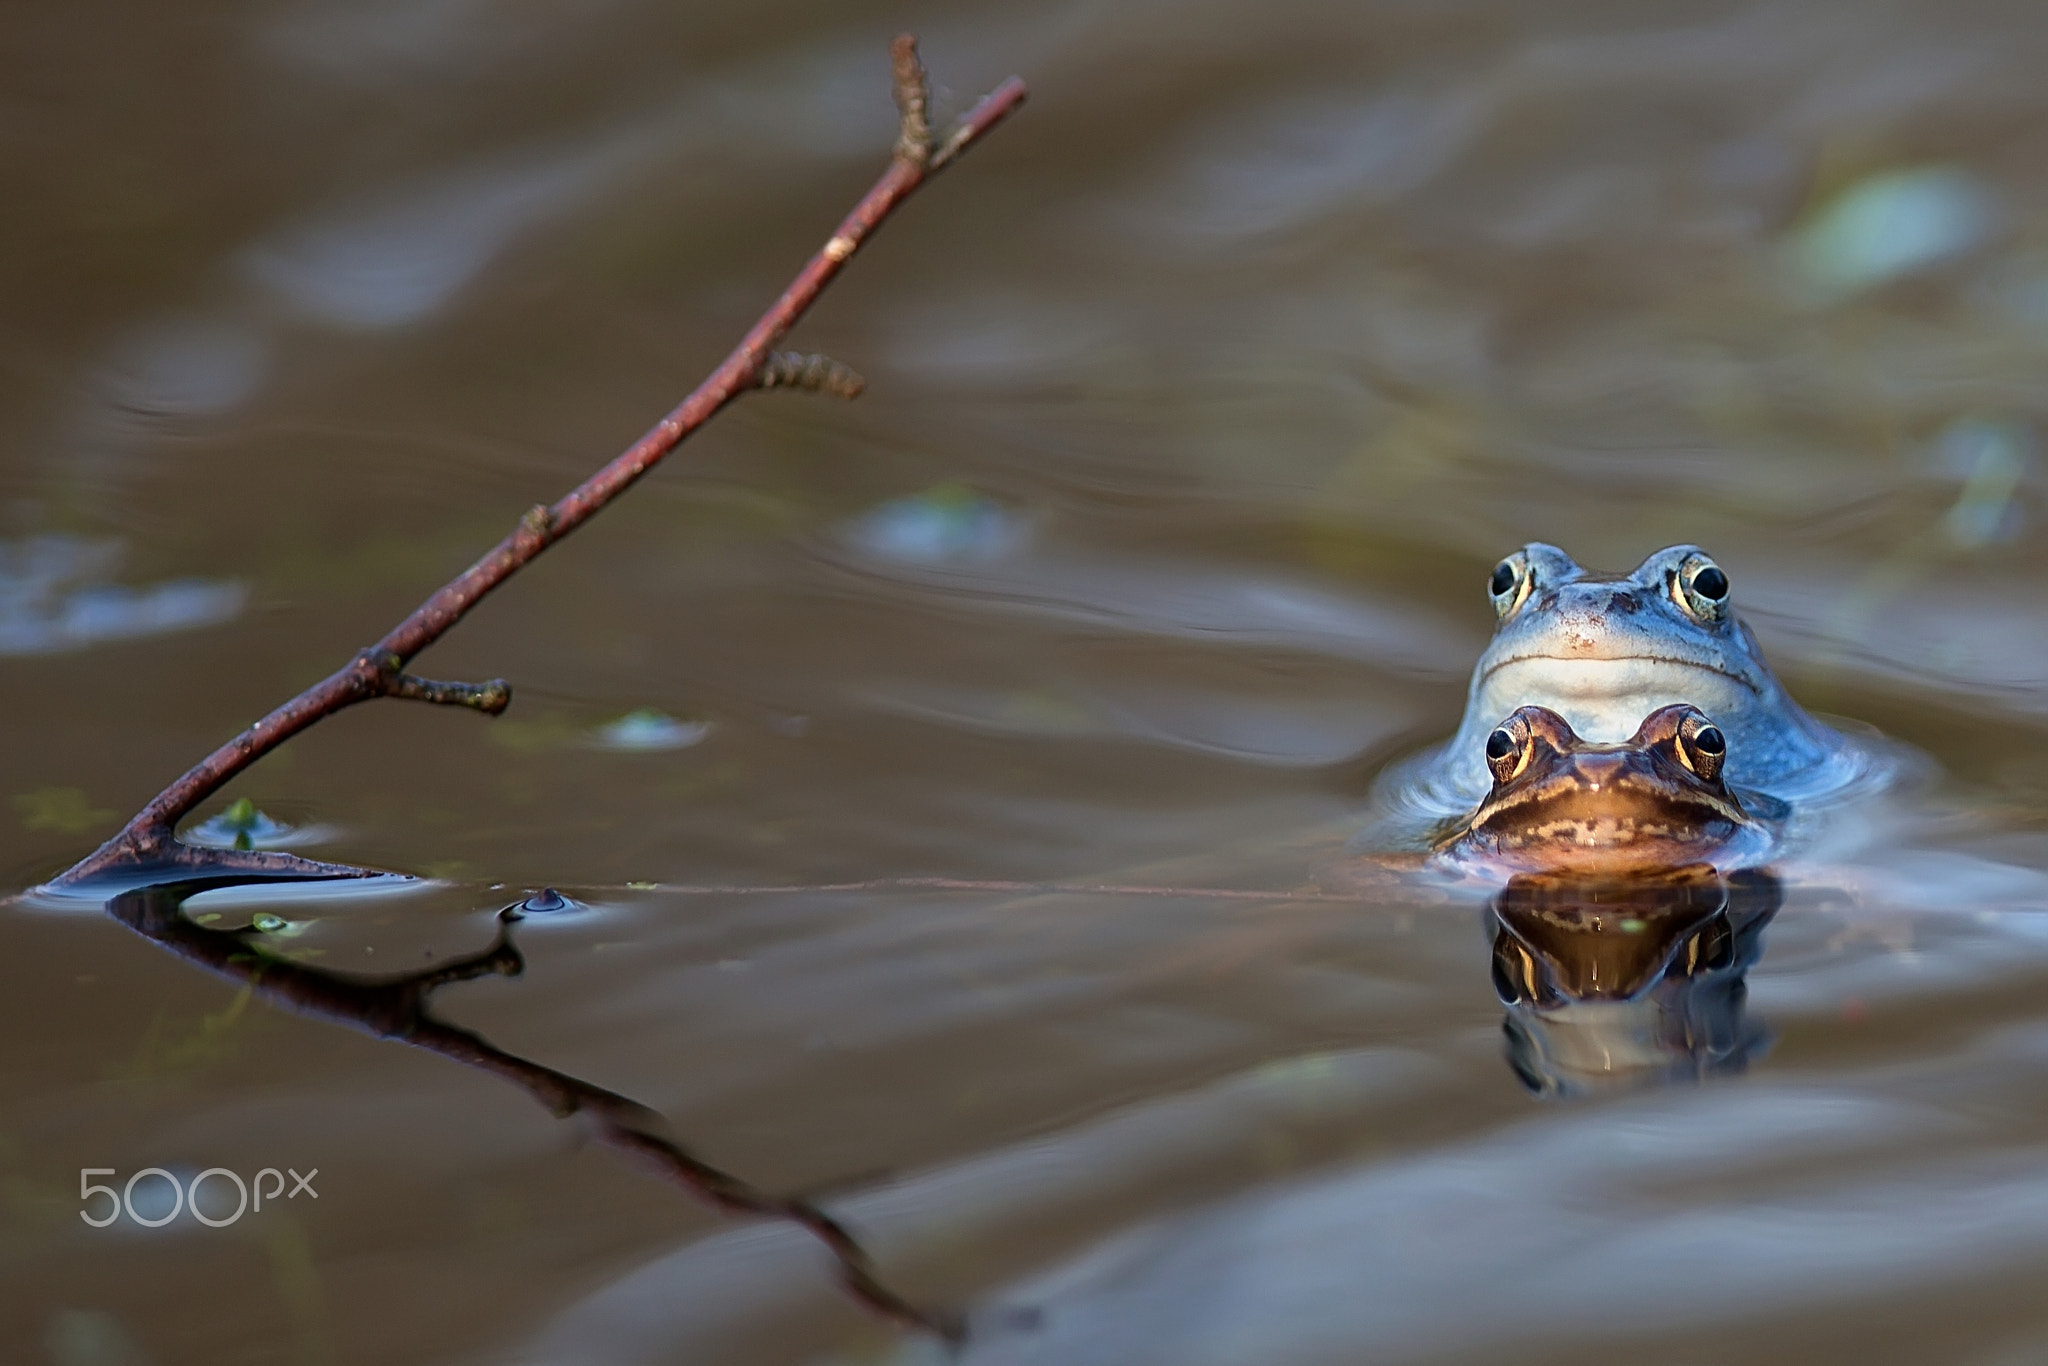 Moor frogs in the wild